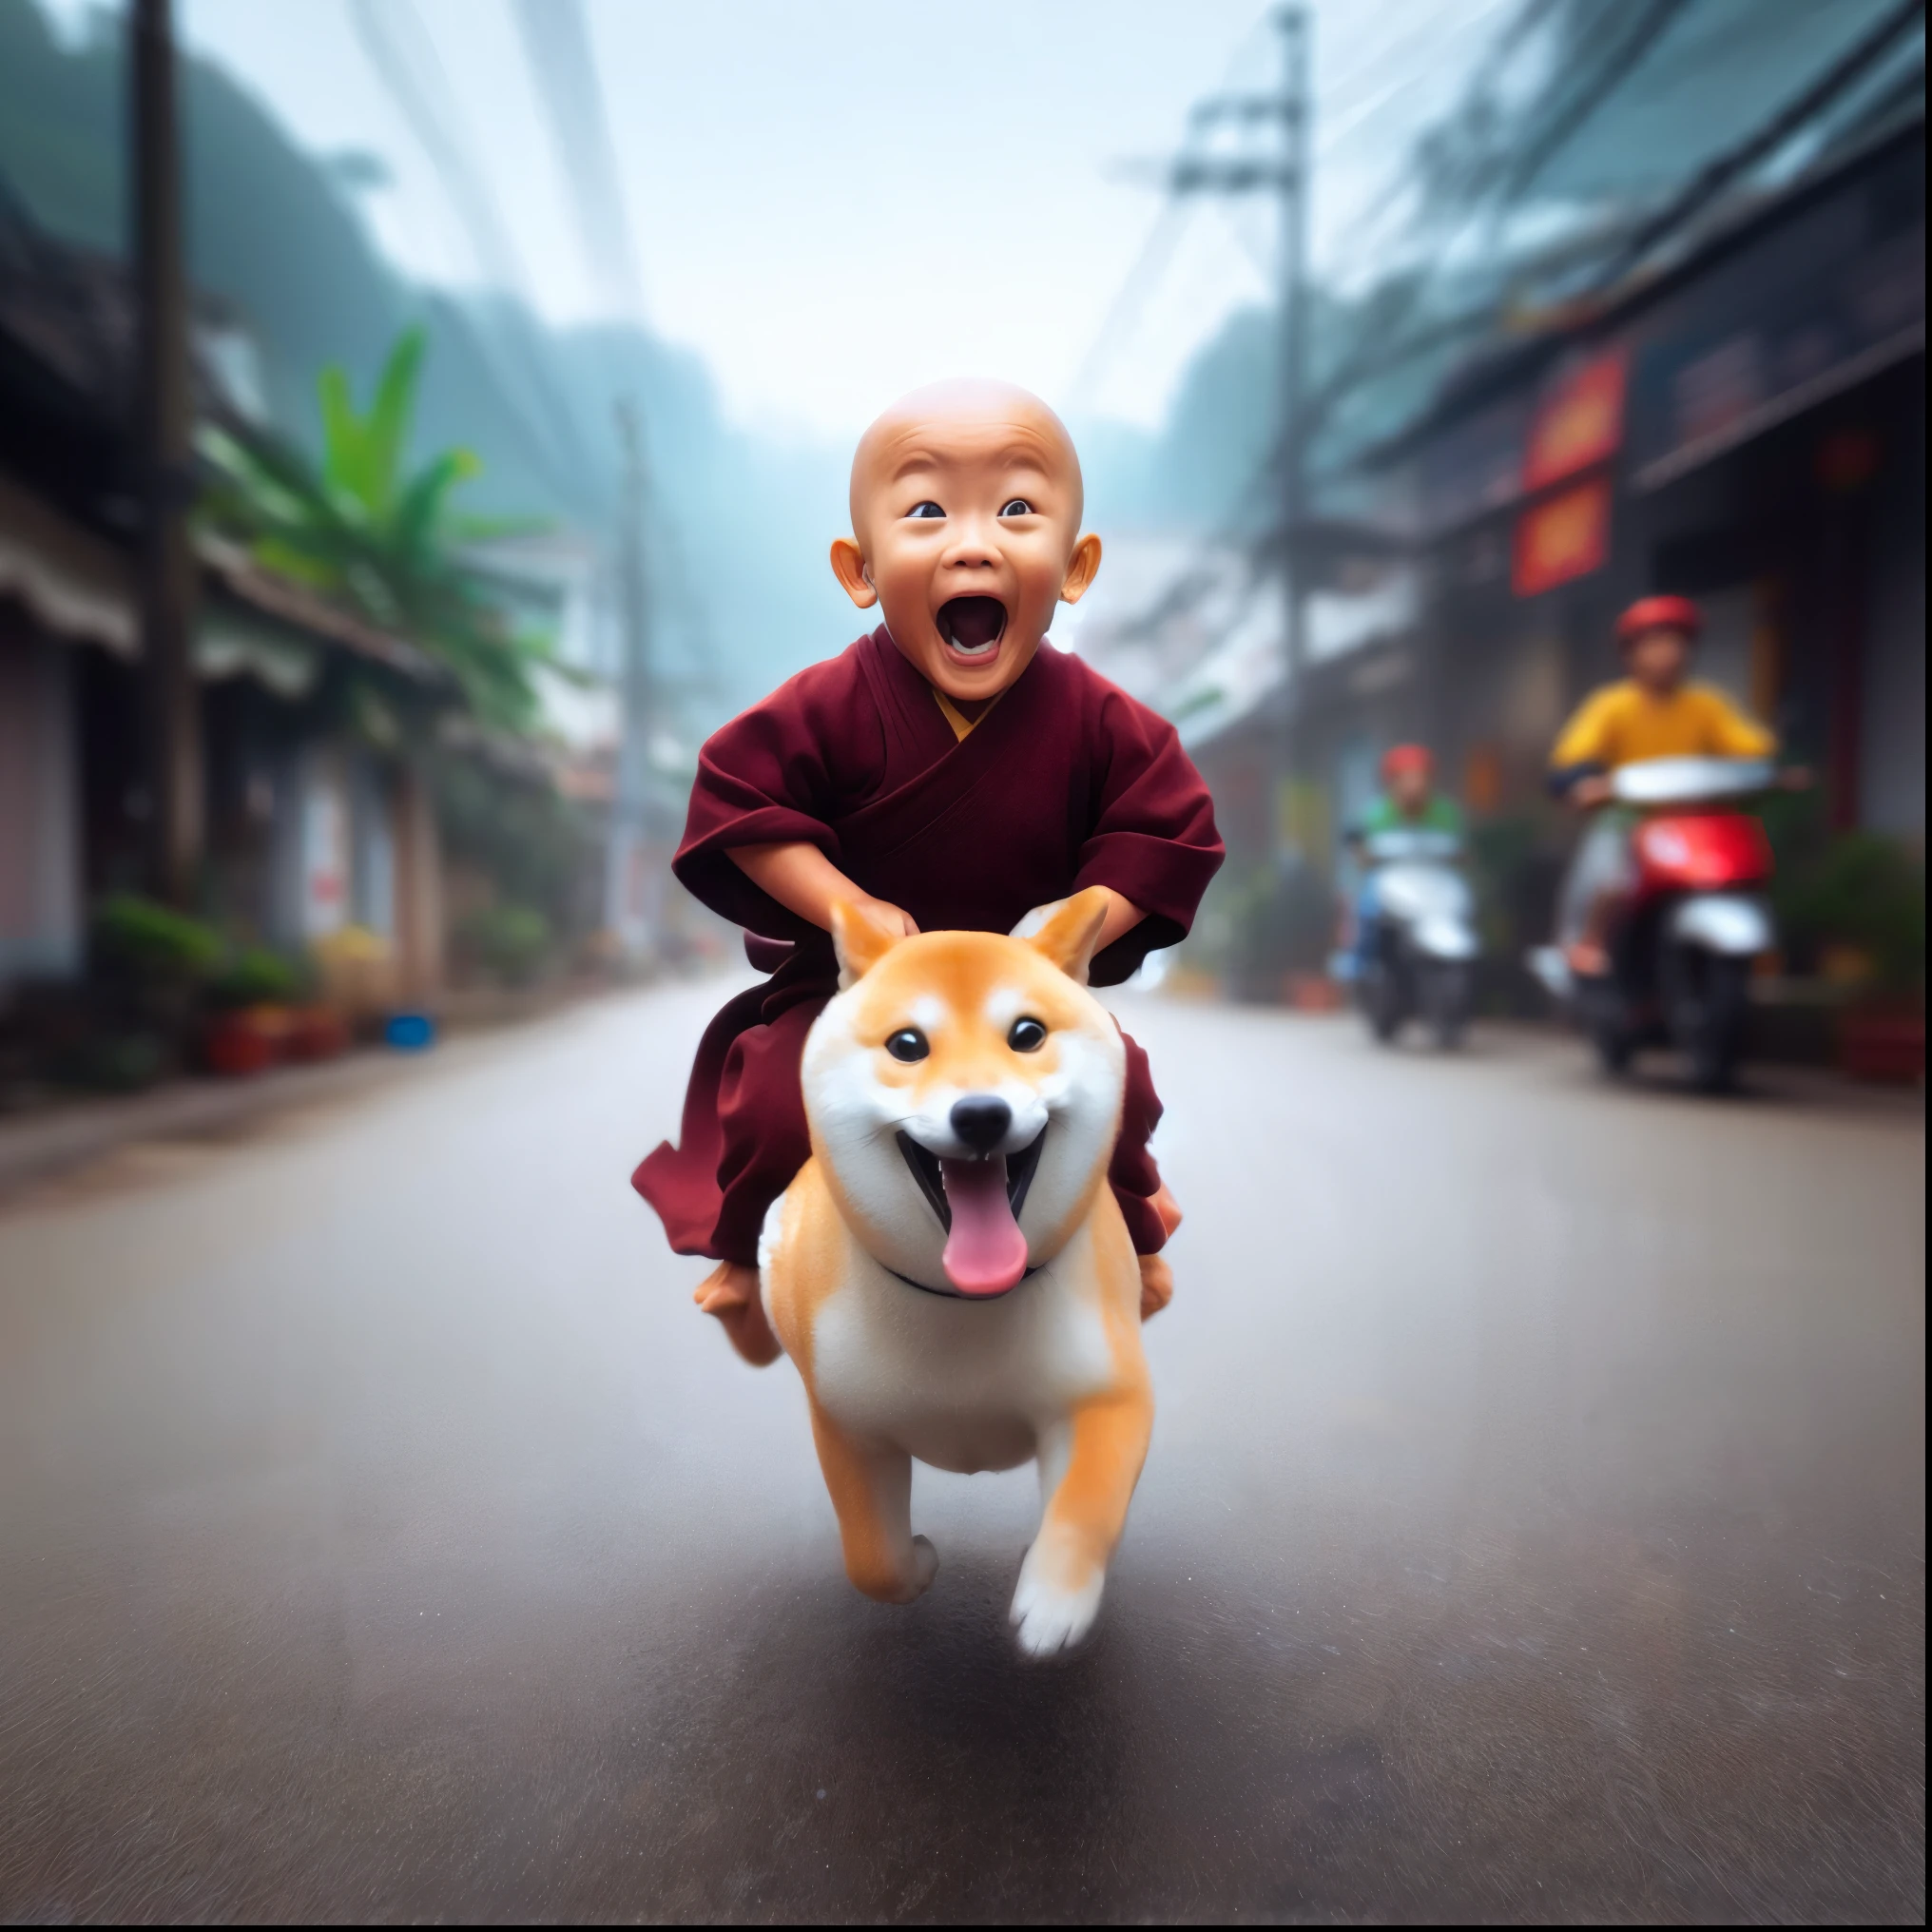 arafed image of a monje riding a dog on a street, Budista, perro como dios, 2 1 st century monje, amazing depth, dux, budismo, Impresionante, con su perrito hiperactivo, obra de arte al estilo de guweiz, adorable pintura digital, monje, el es muy feliz, pura alegría, inspirado en Shiba Kokan